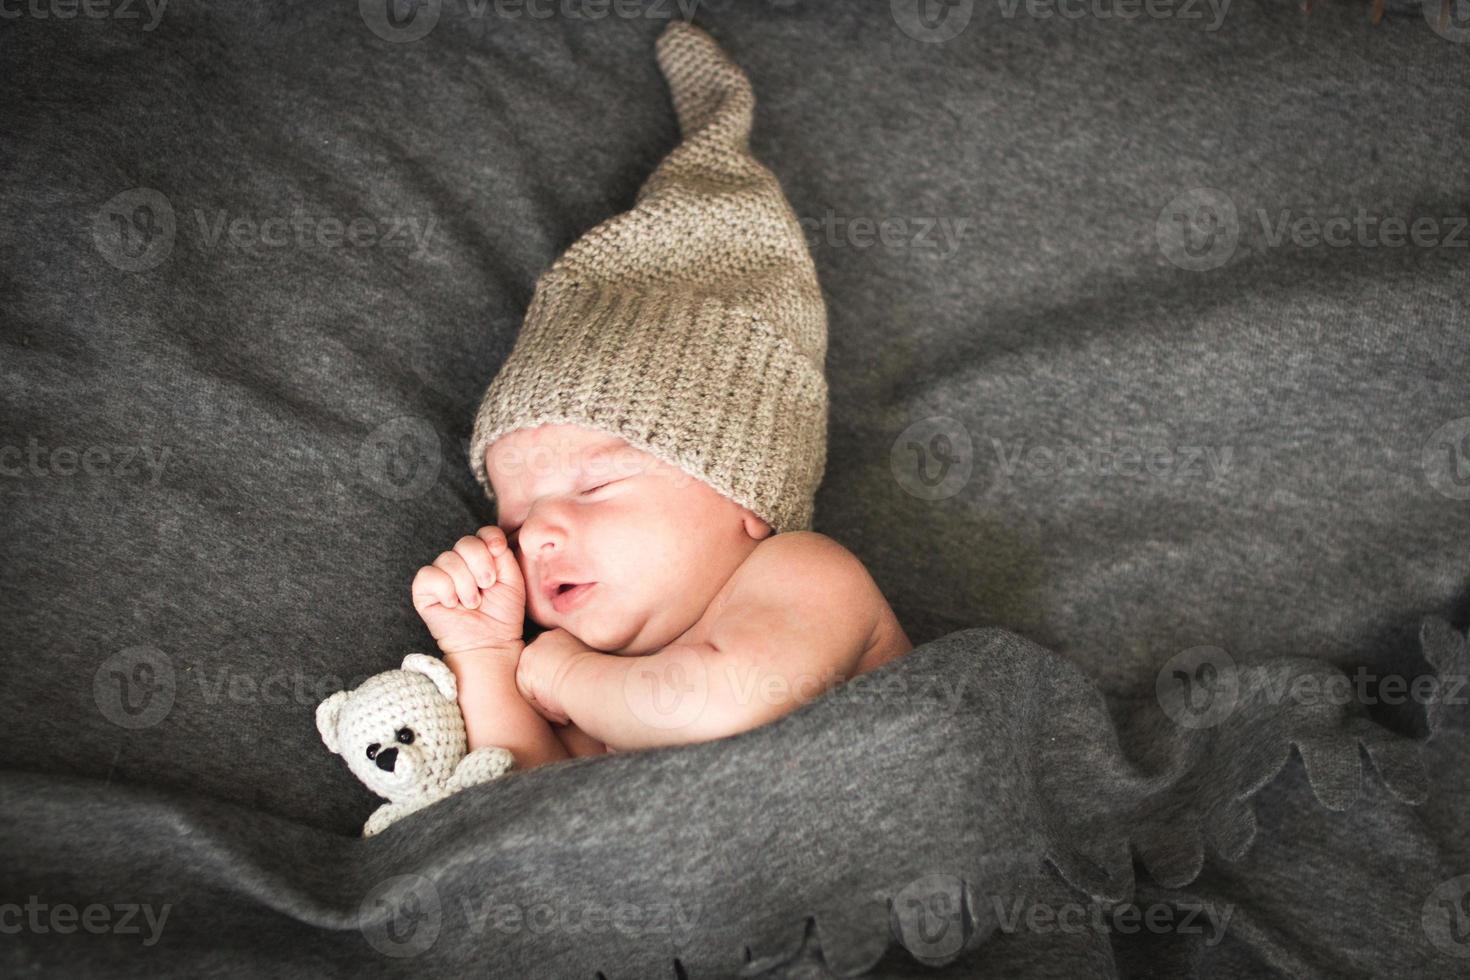 bebé recién nacido durmiendo con un juguete al lado del oso de peluche de punto foto